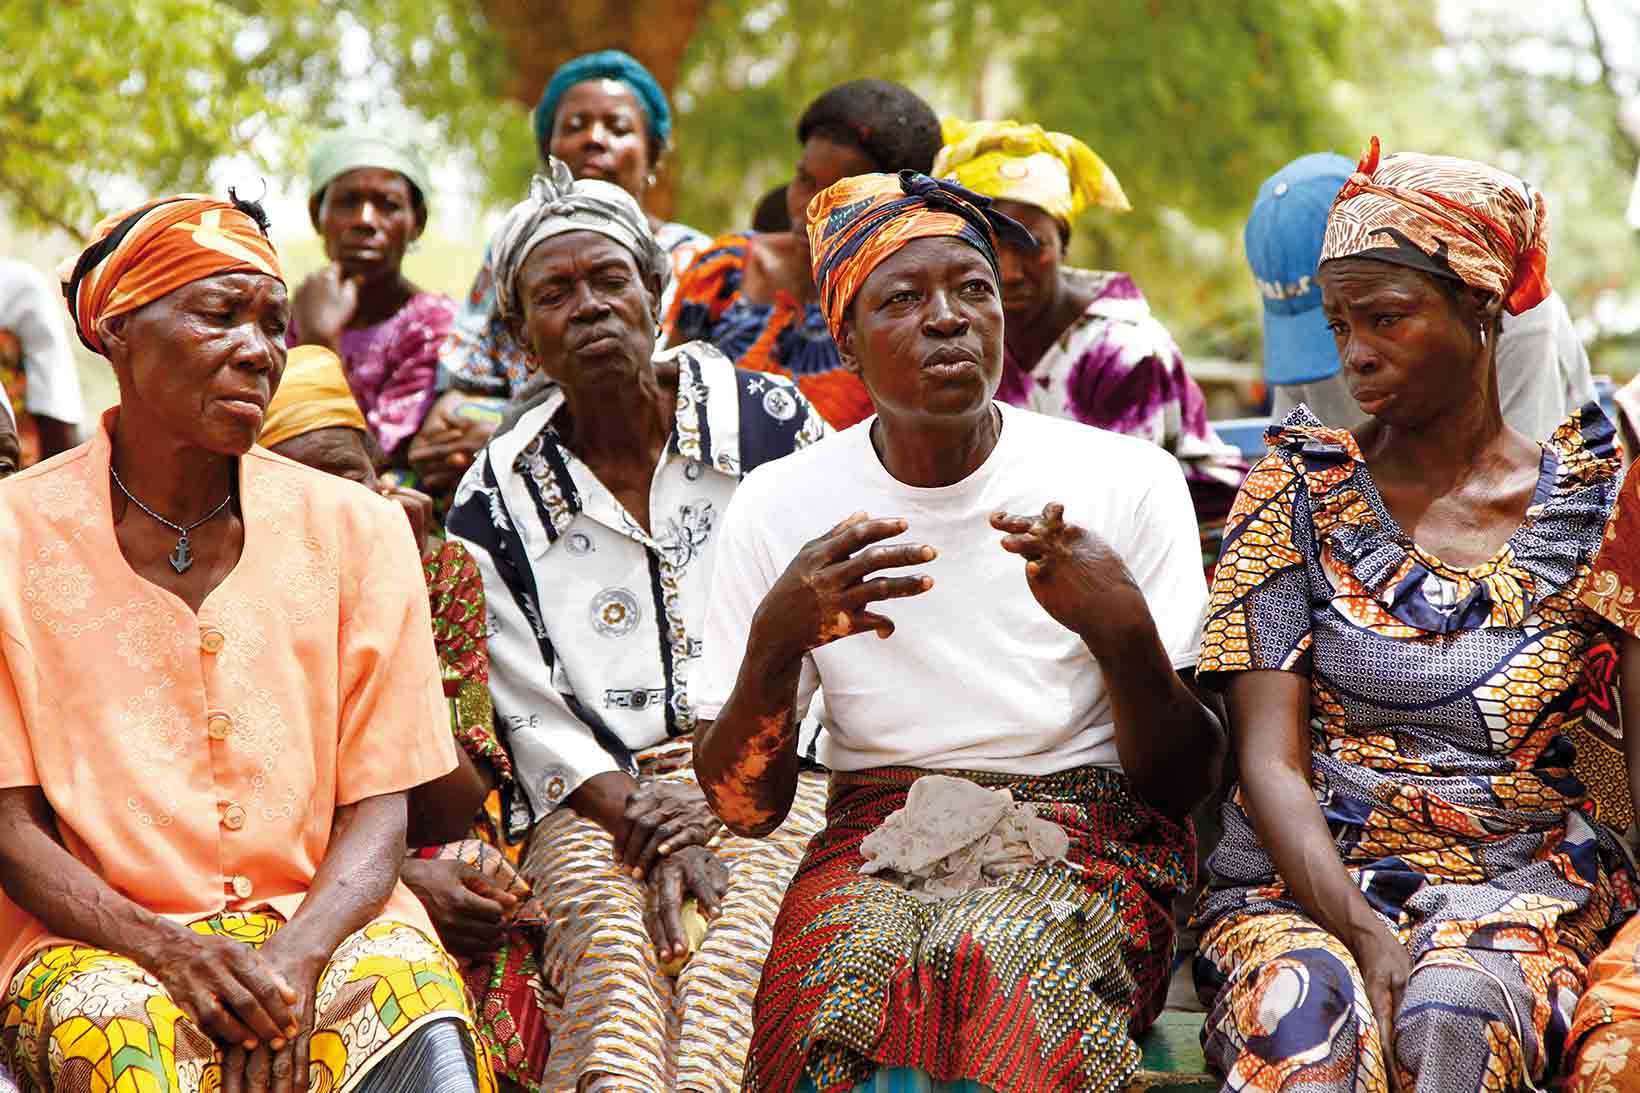 Un gruppo di donne dal Ghana fotografato frontalmente. La donna che parla ha una disabilità fisica.